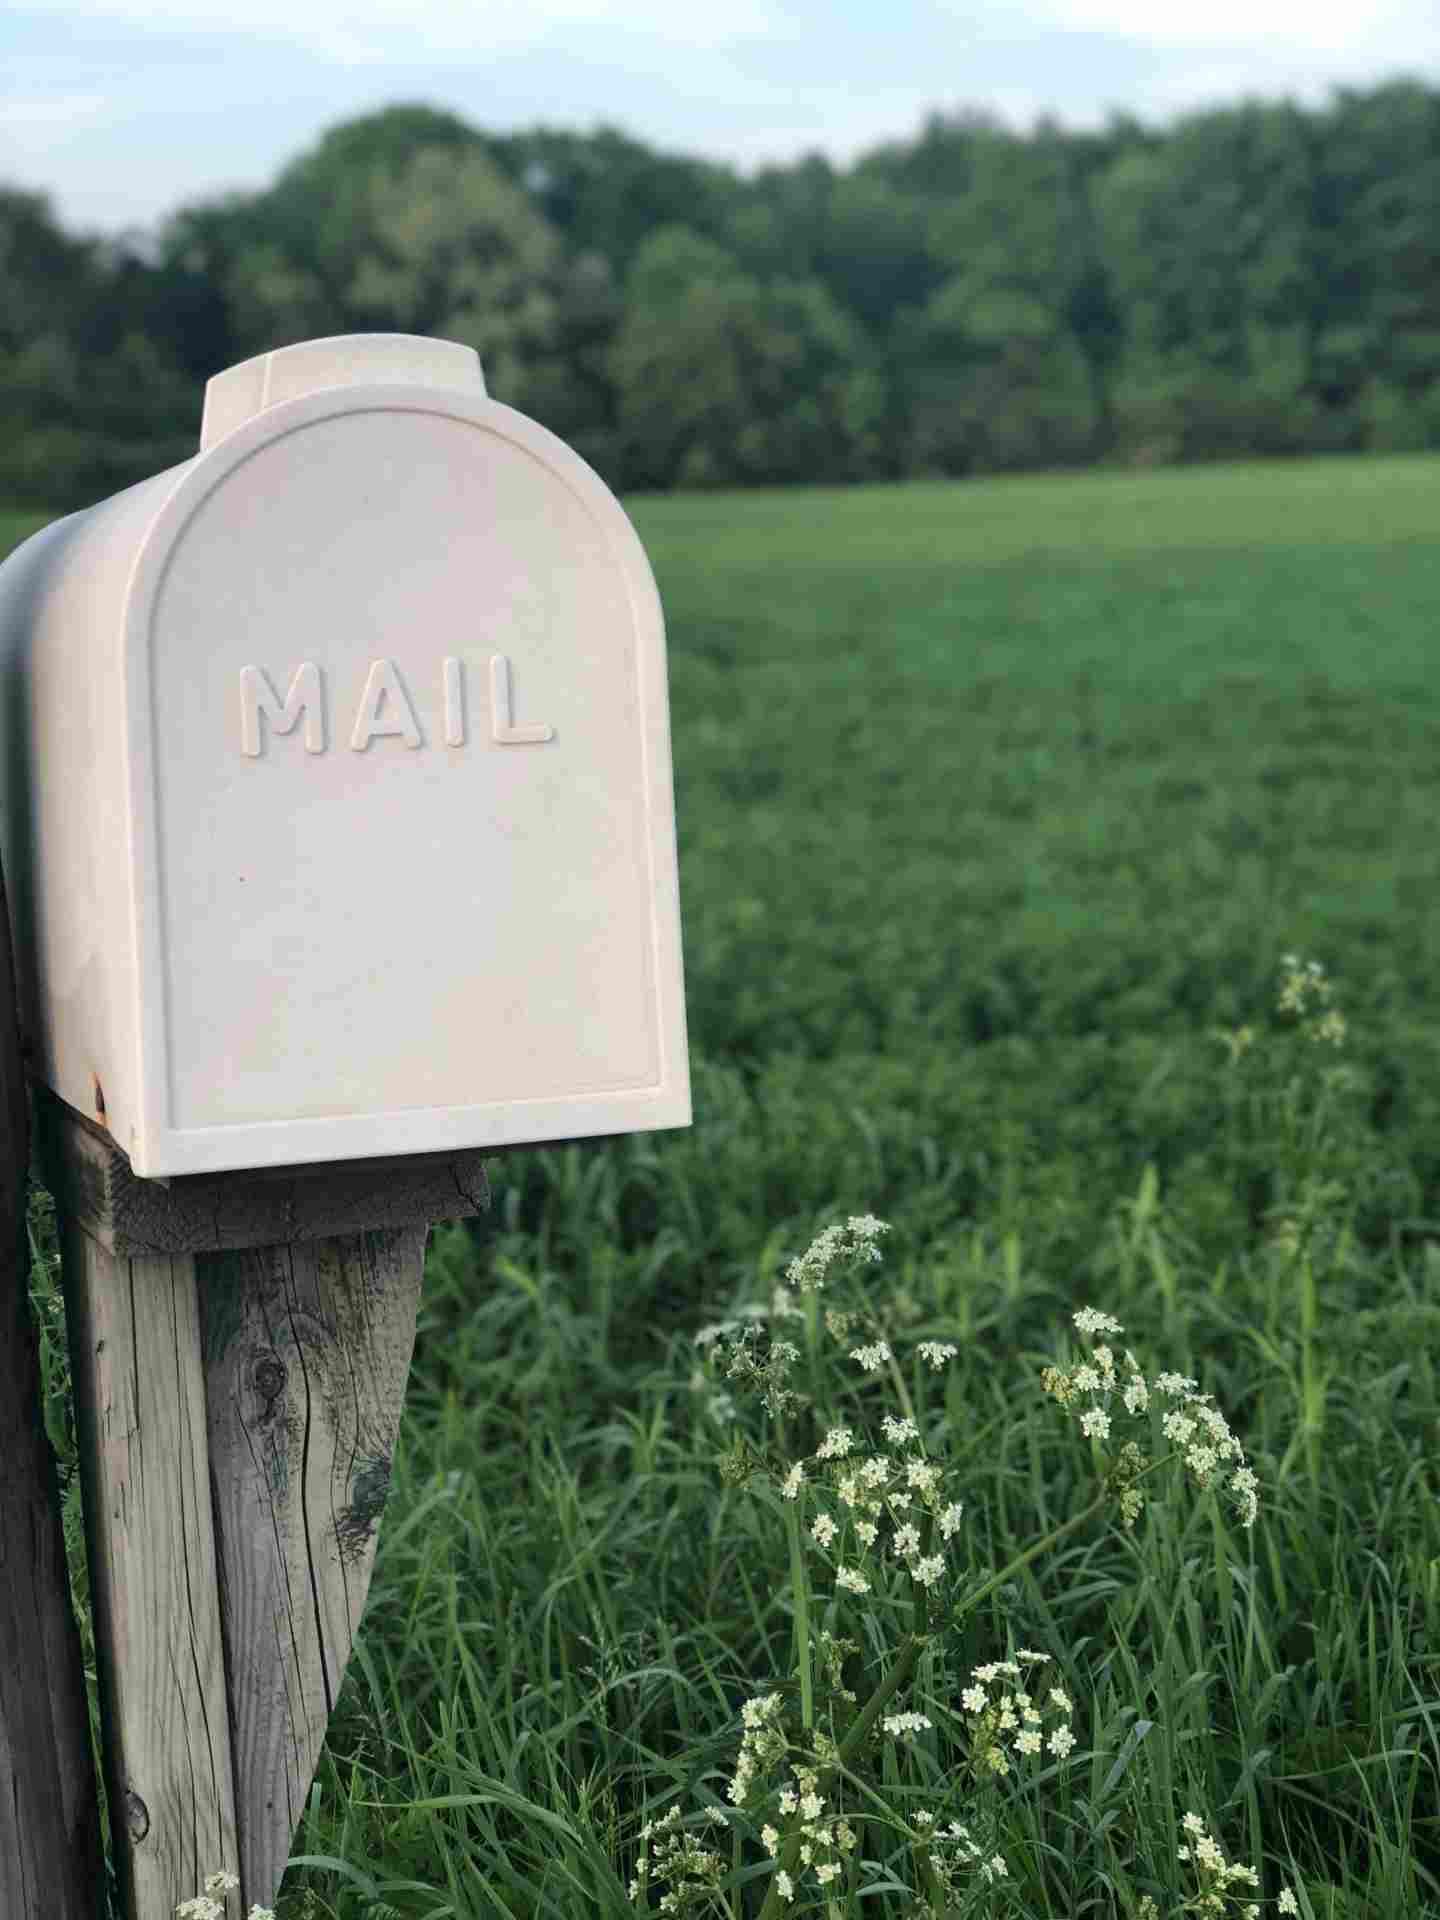 correo buzon mail en el campo prado verde